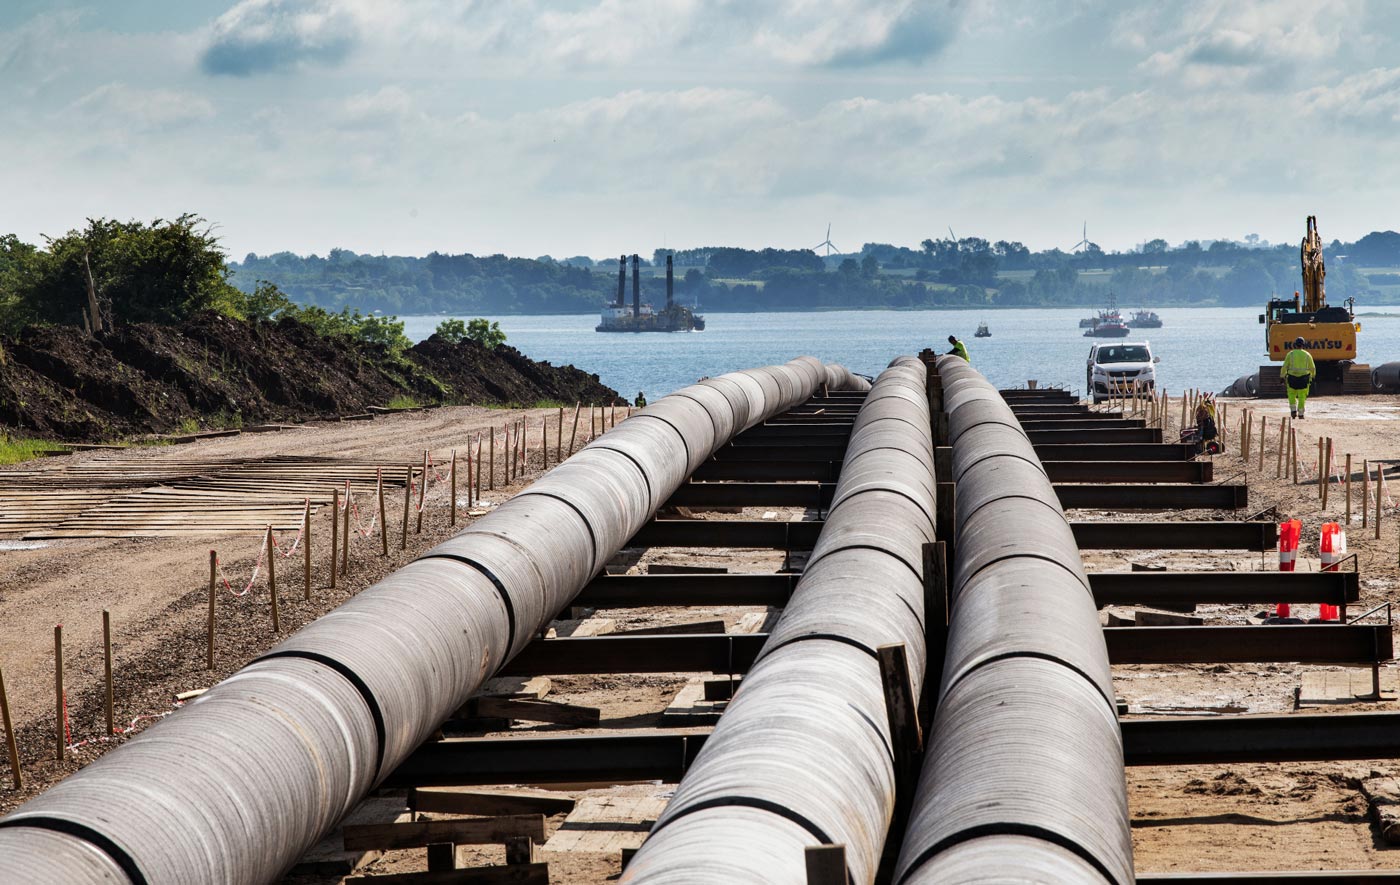 Bientôt un pipeline à hydrogène entre la Norvège et l'Allemagne ?